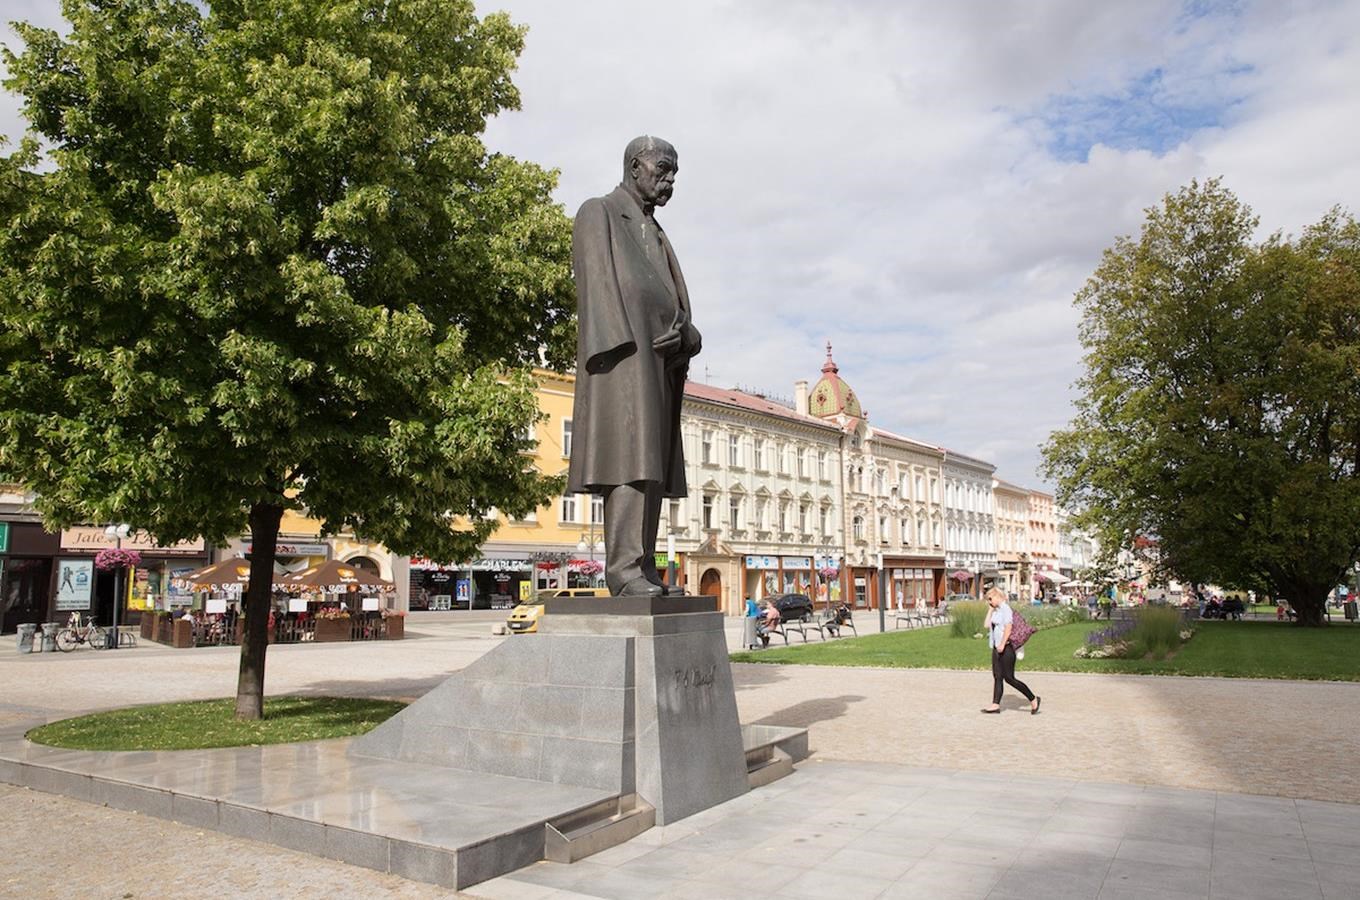 Pomník T. G. Masaryka v Prostějově